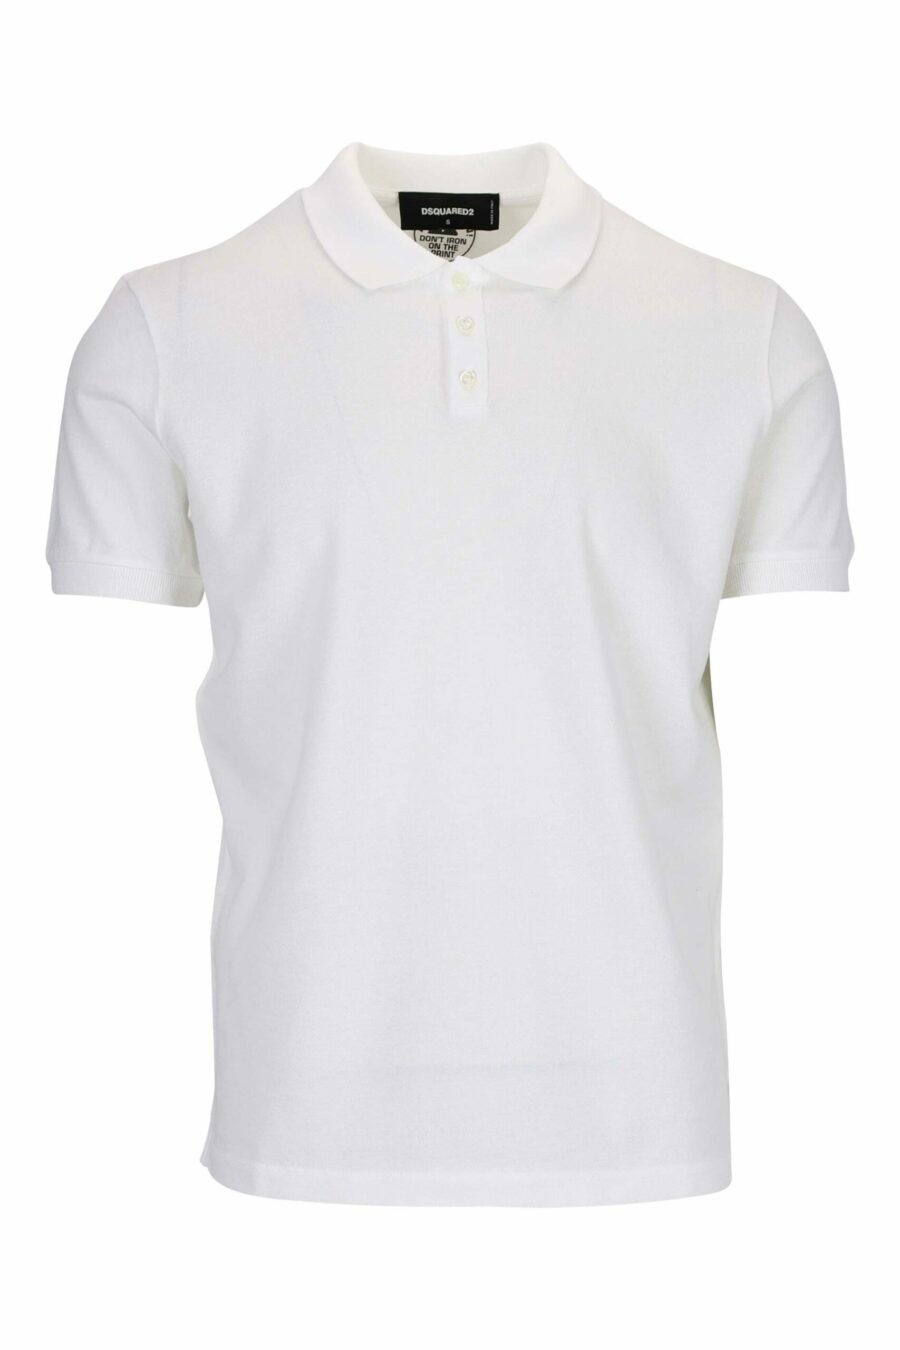 Weißes "Tennis Fit"-Poloshirt mit "Icon"-Logo auf dem Rücken - 8054148117122 skaliert